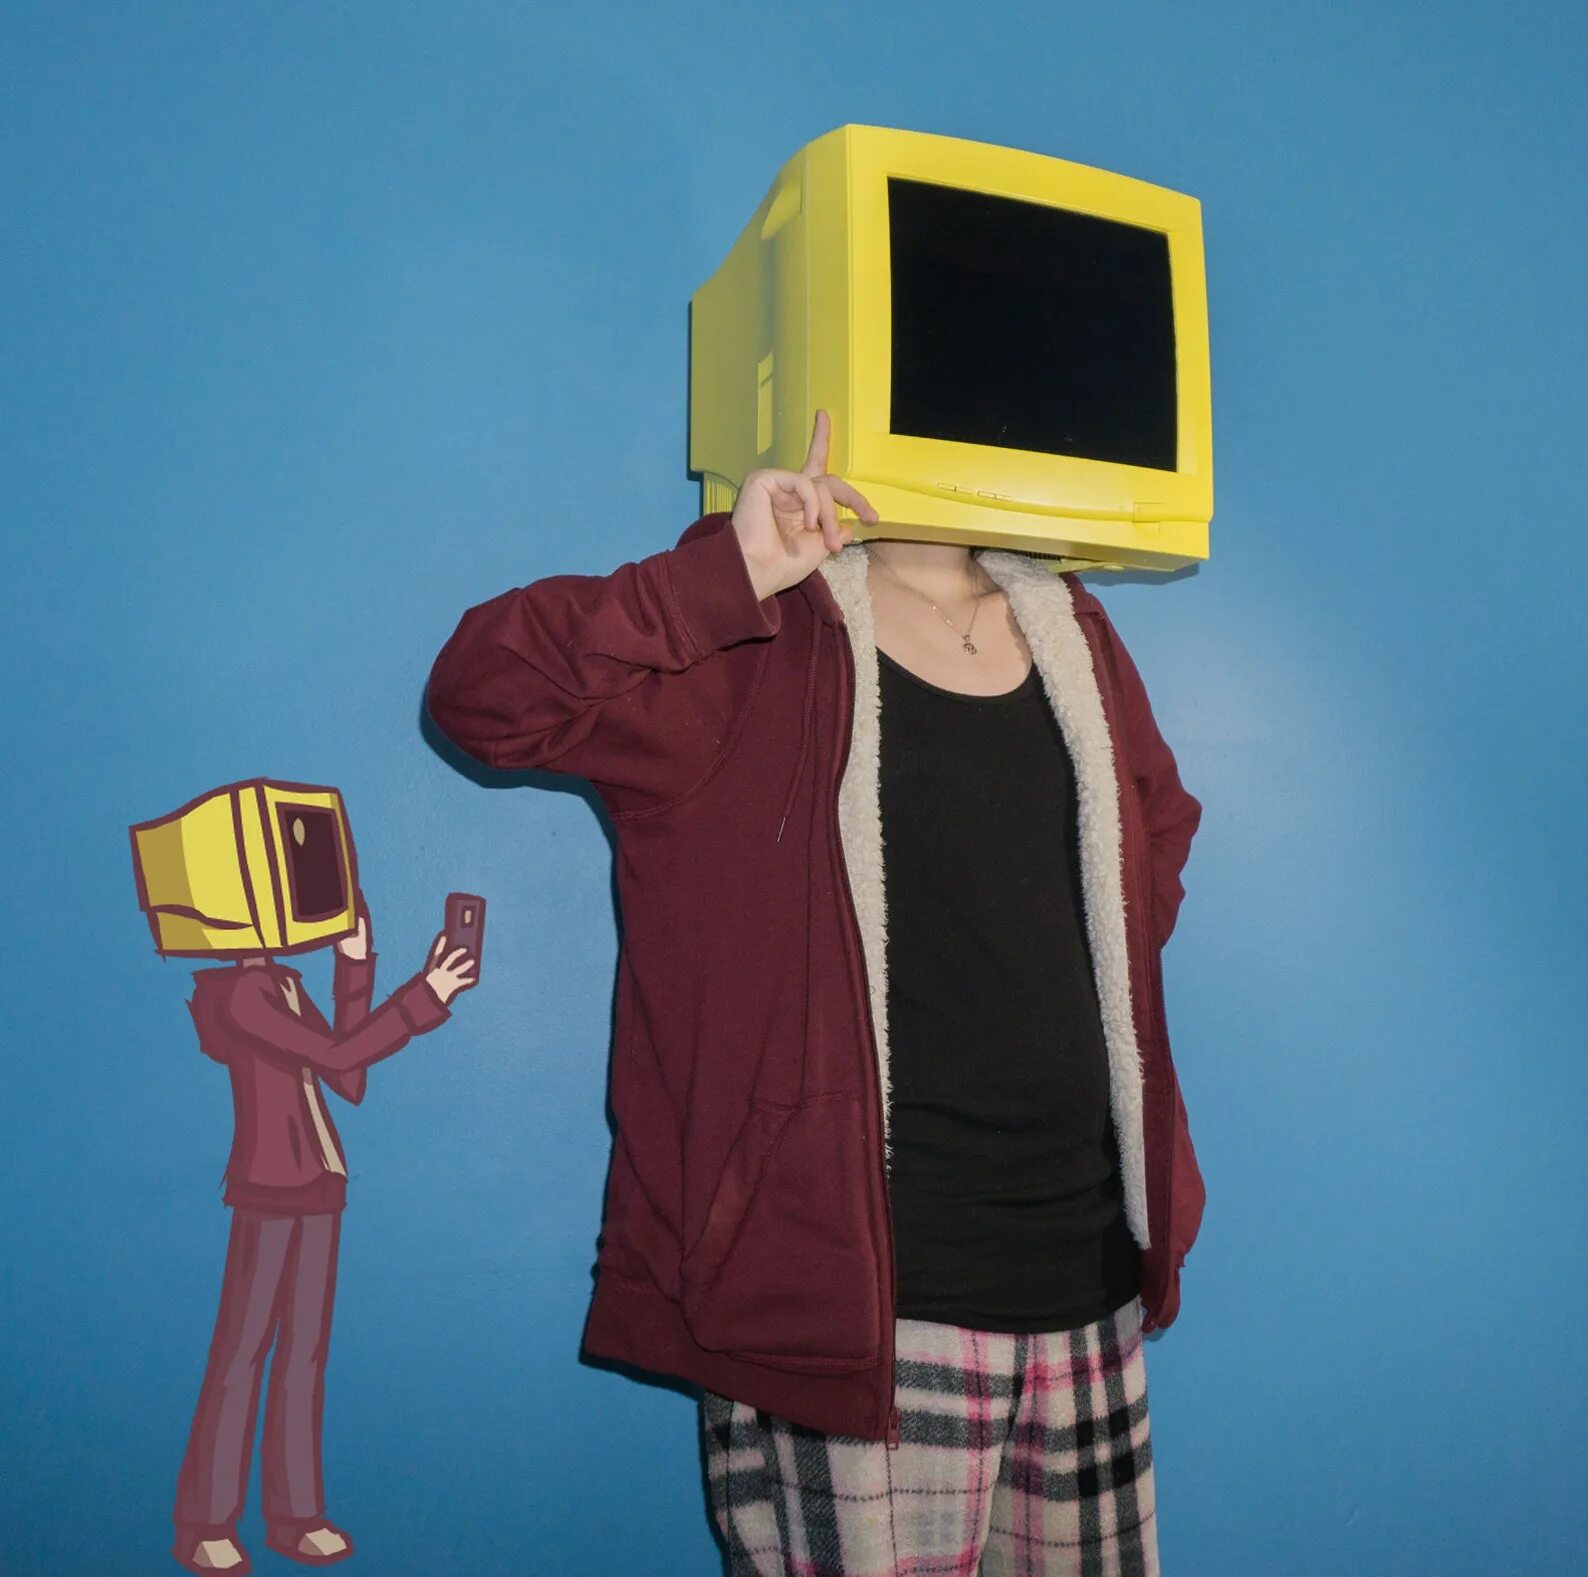 Компьютер вместо телефона. Человек телевизор. Телевизор вместо головы. Человек с головой телевизора. Человек с телевизором вместо головы.